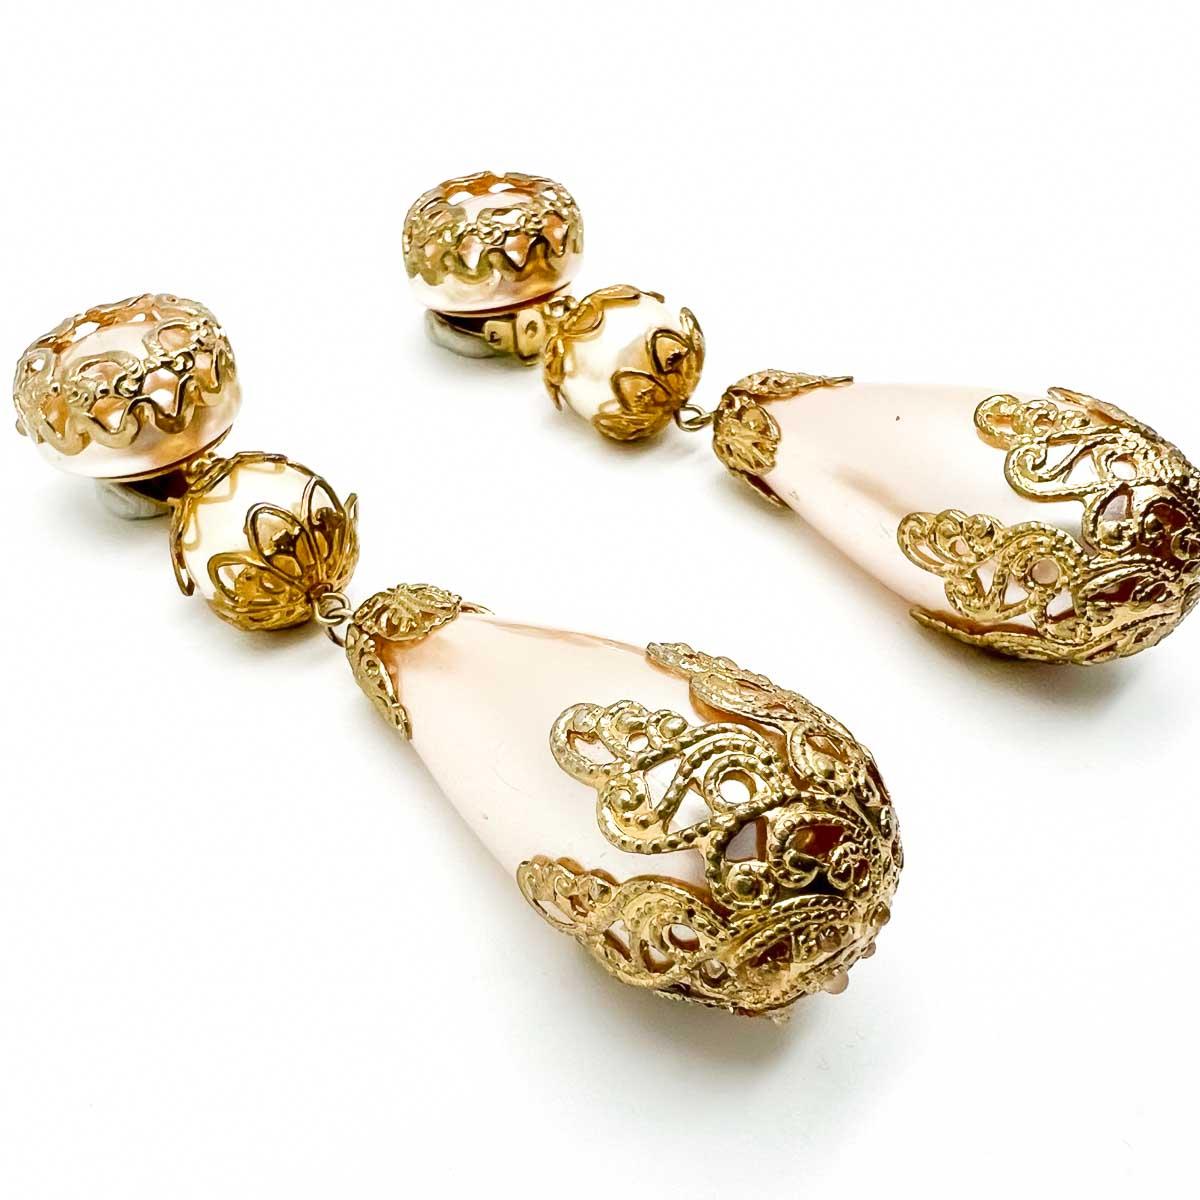 Ein atemberaubendes Paar Vintage-Ohrringe mit Perlenbomben.
Eine unsignierte Schönheit. Ein seltener Schatz. Nur weil ein Schmuckstück nicht den Namen eines Designers trägt, heißt das nicht, dass es nicht begehrt ist. Die unsignierten Schönheiten in